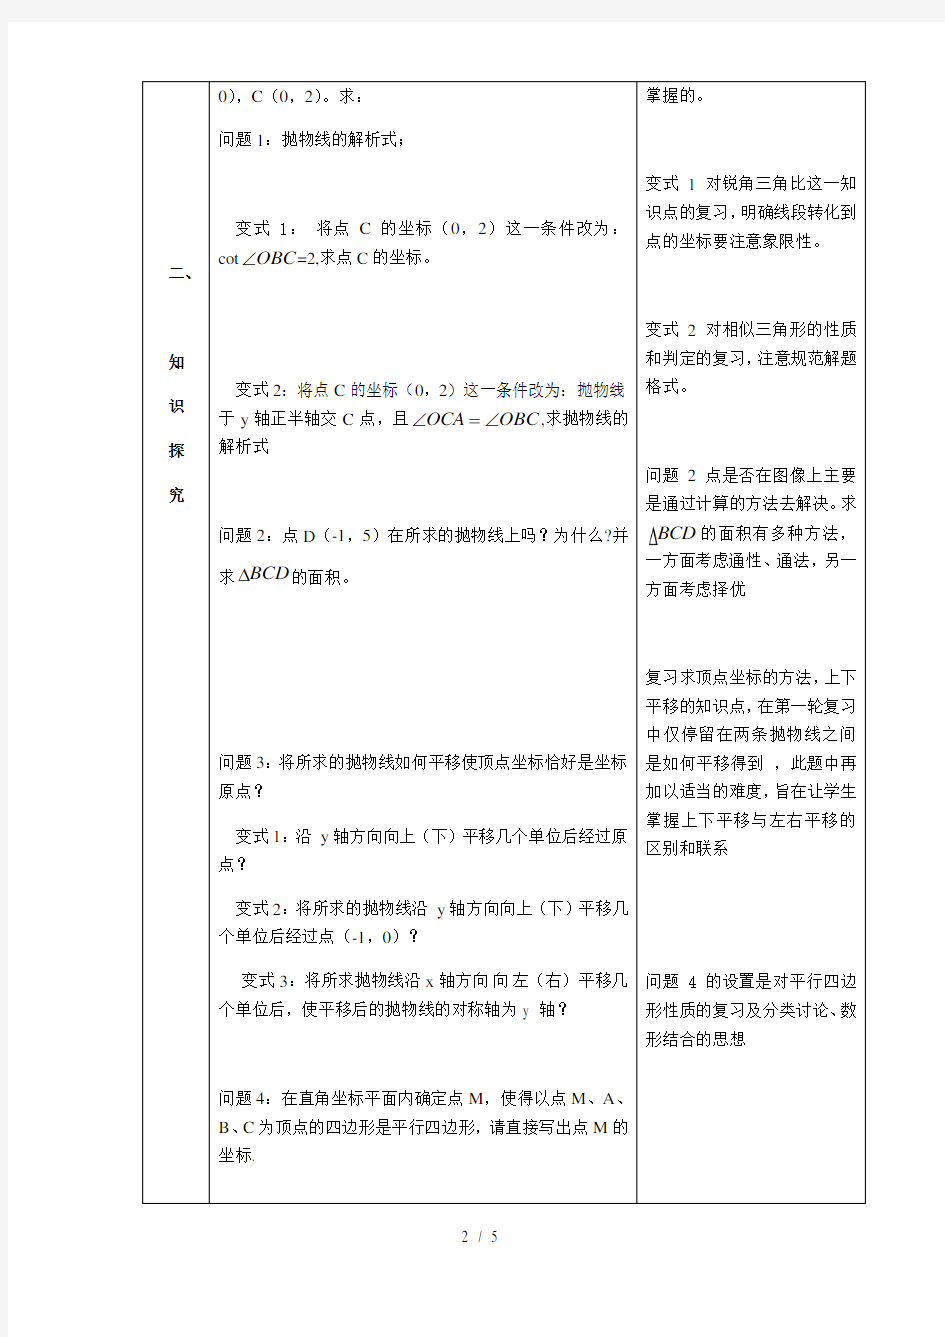 沪教版(上海)初中数学九年级第一学期 本章小结以二次函数为背景的综合题 教案 